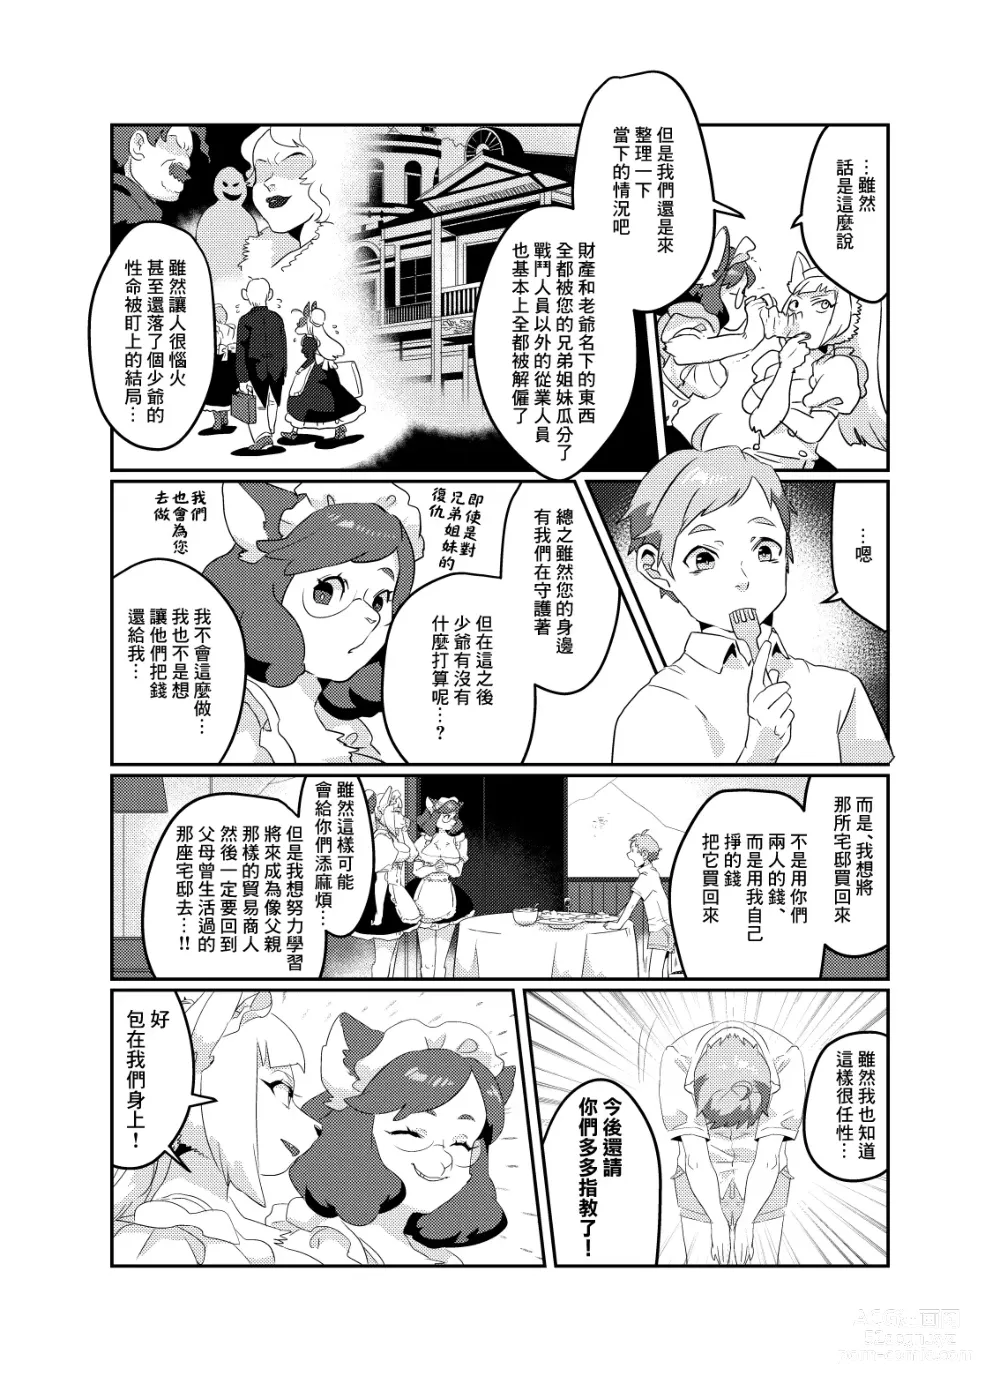 Page 25 of doujinshi Meido inHEAVEN